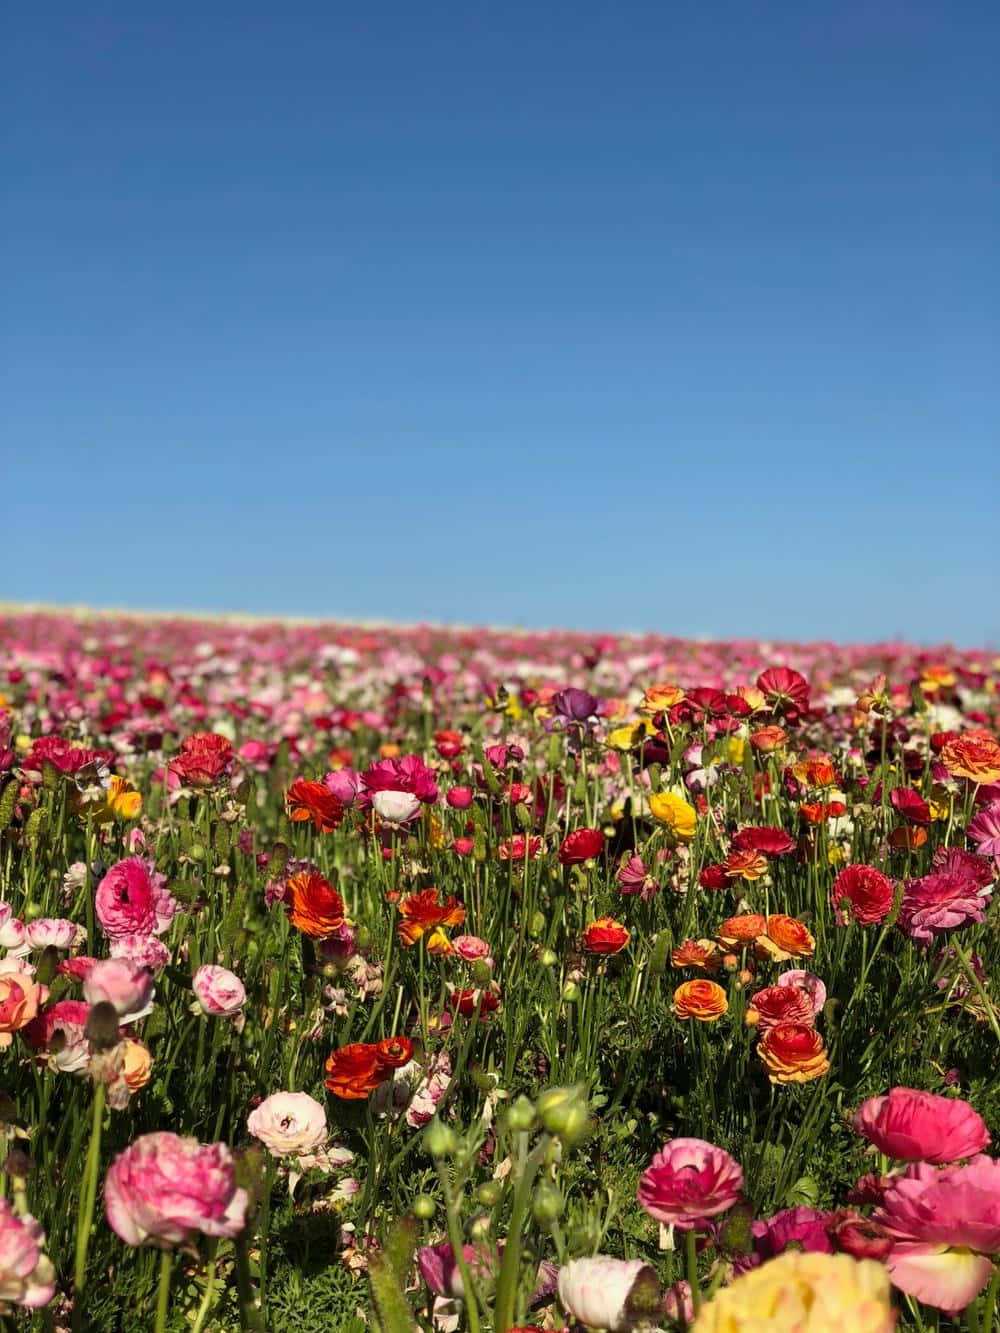 A field of wildflowers in full bloom